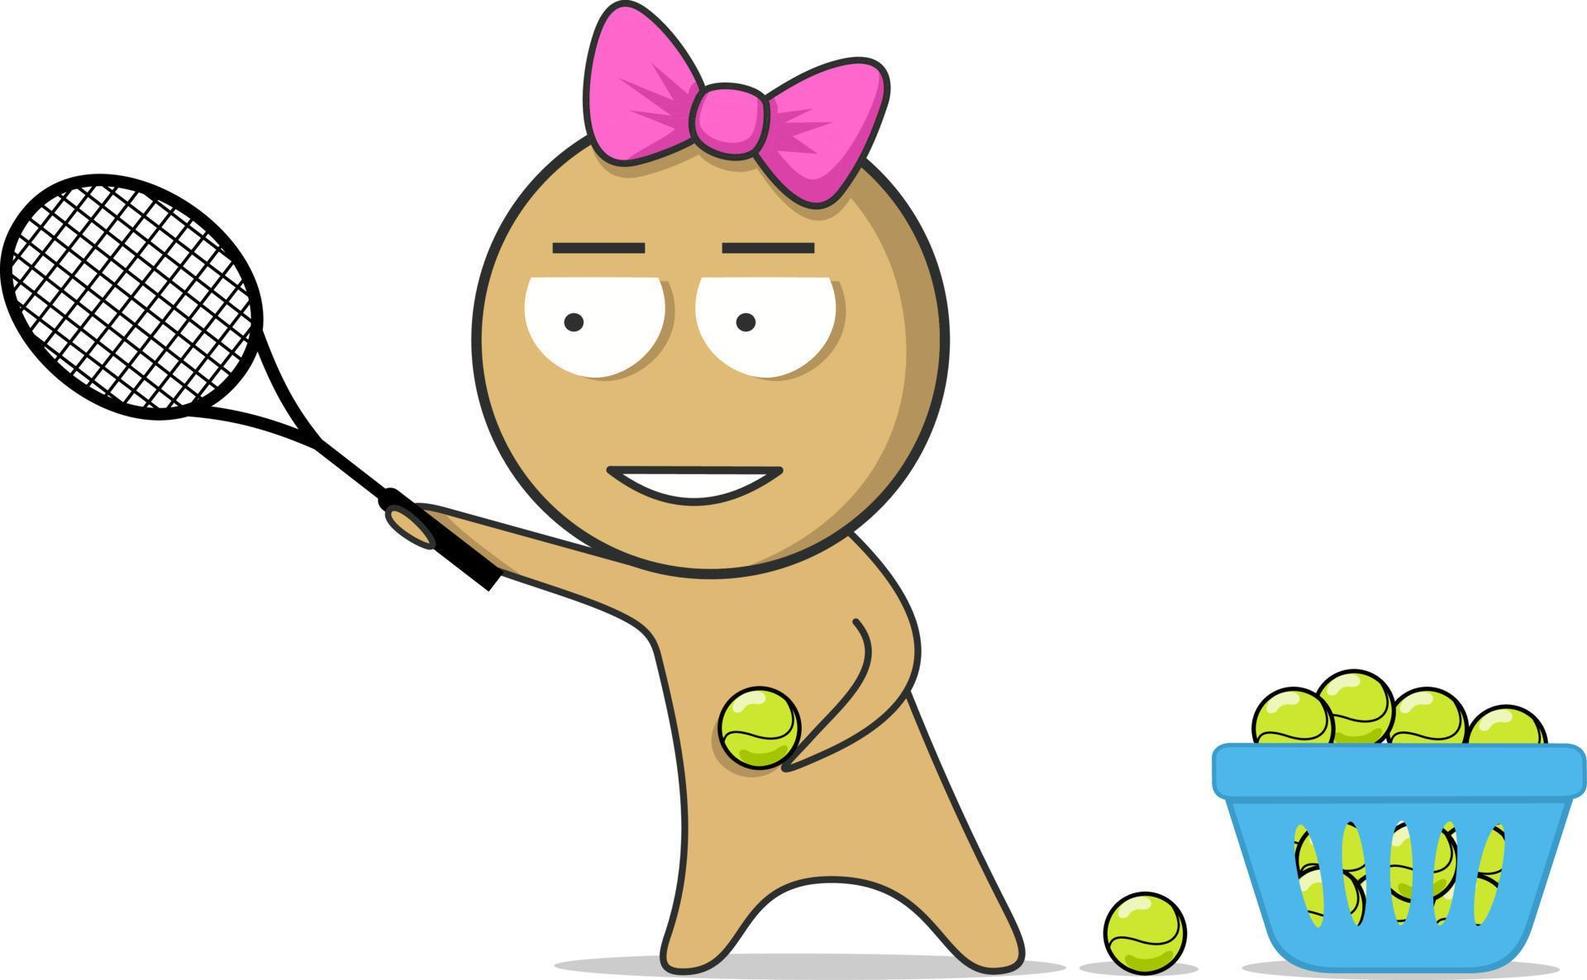 fille avec une raquette de tennis dans ses mains joue au tennis vecteur